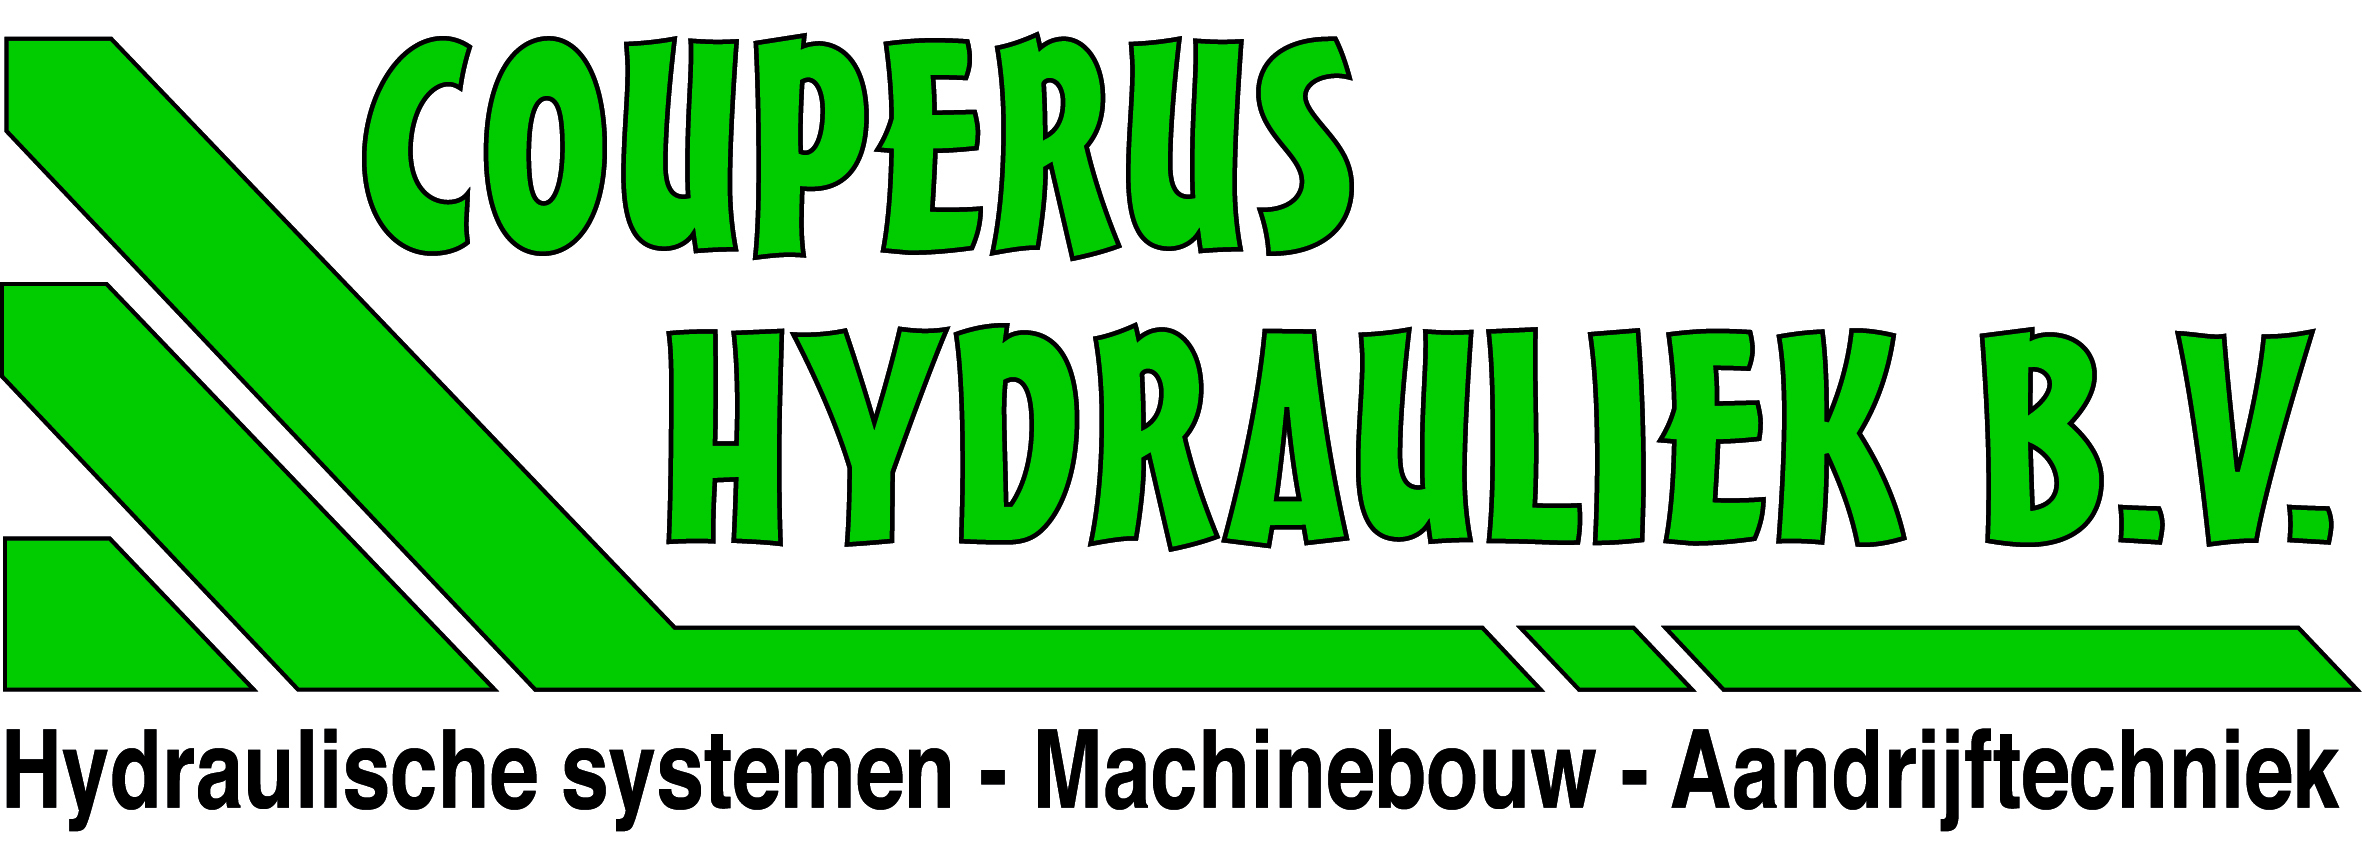 Couperus Hydrauliek: “Ons bedrijf ademt techniek”